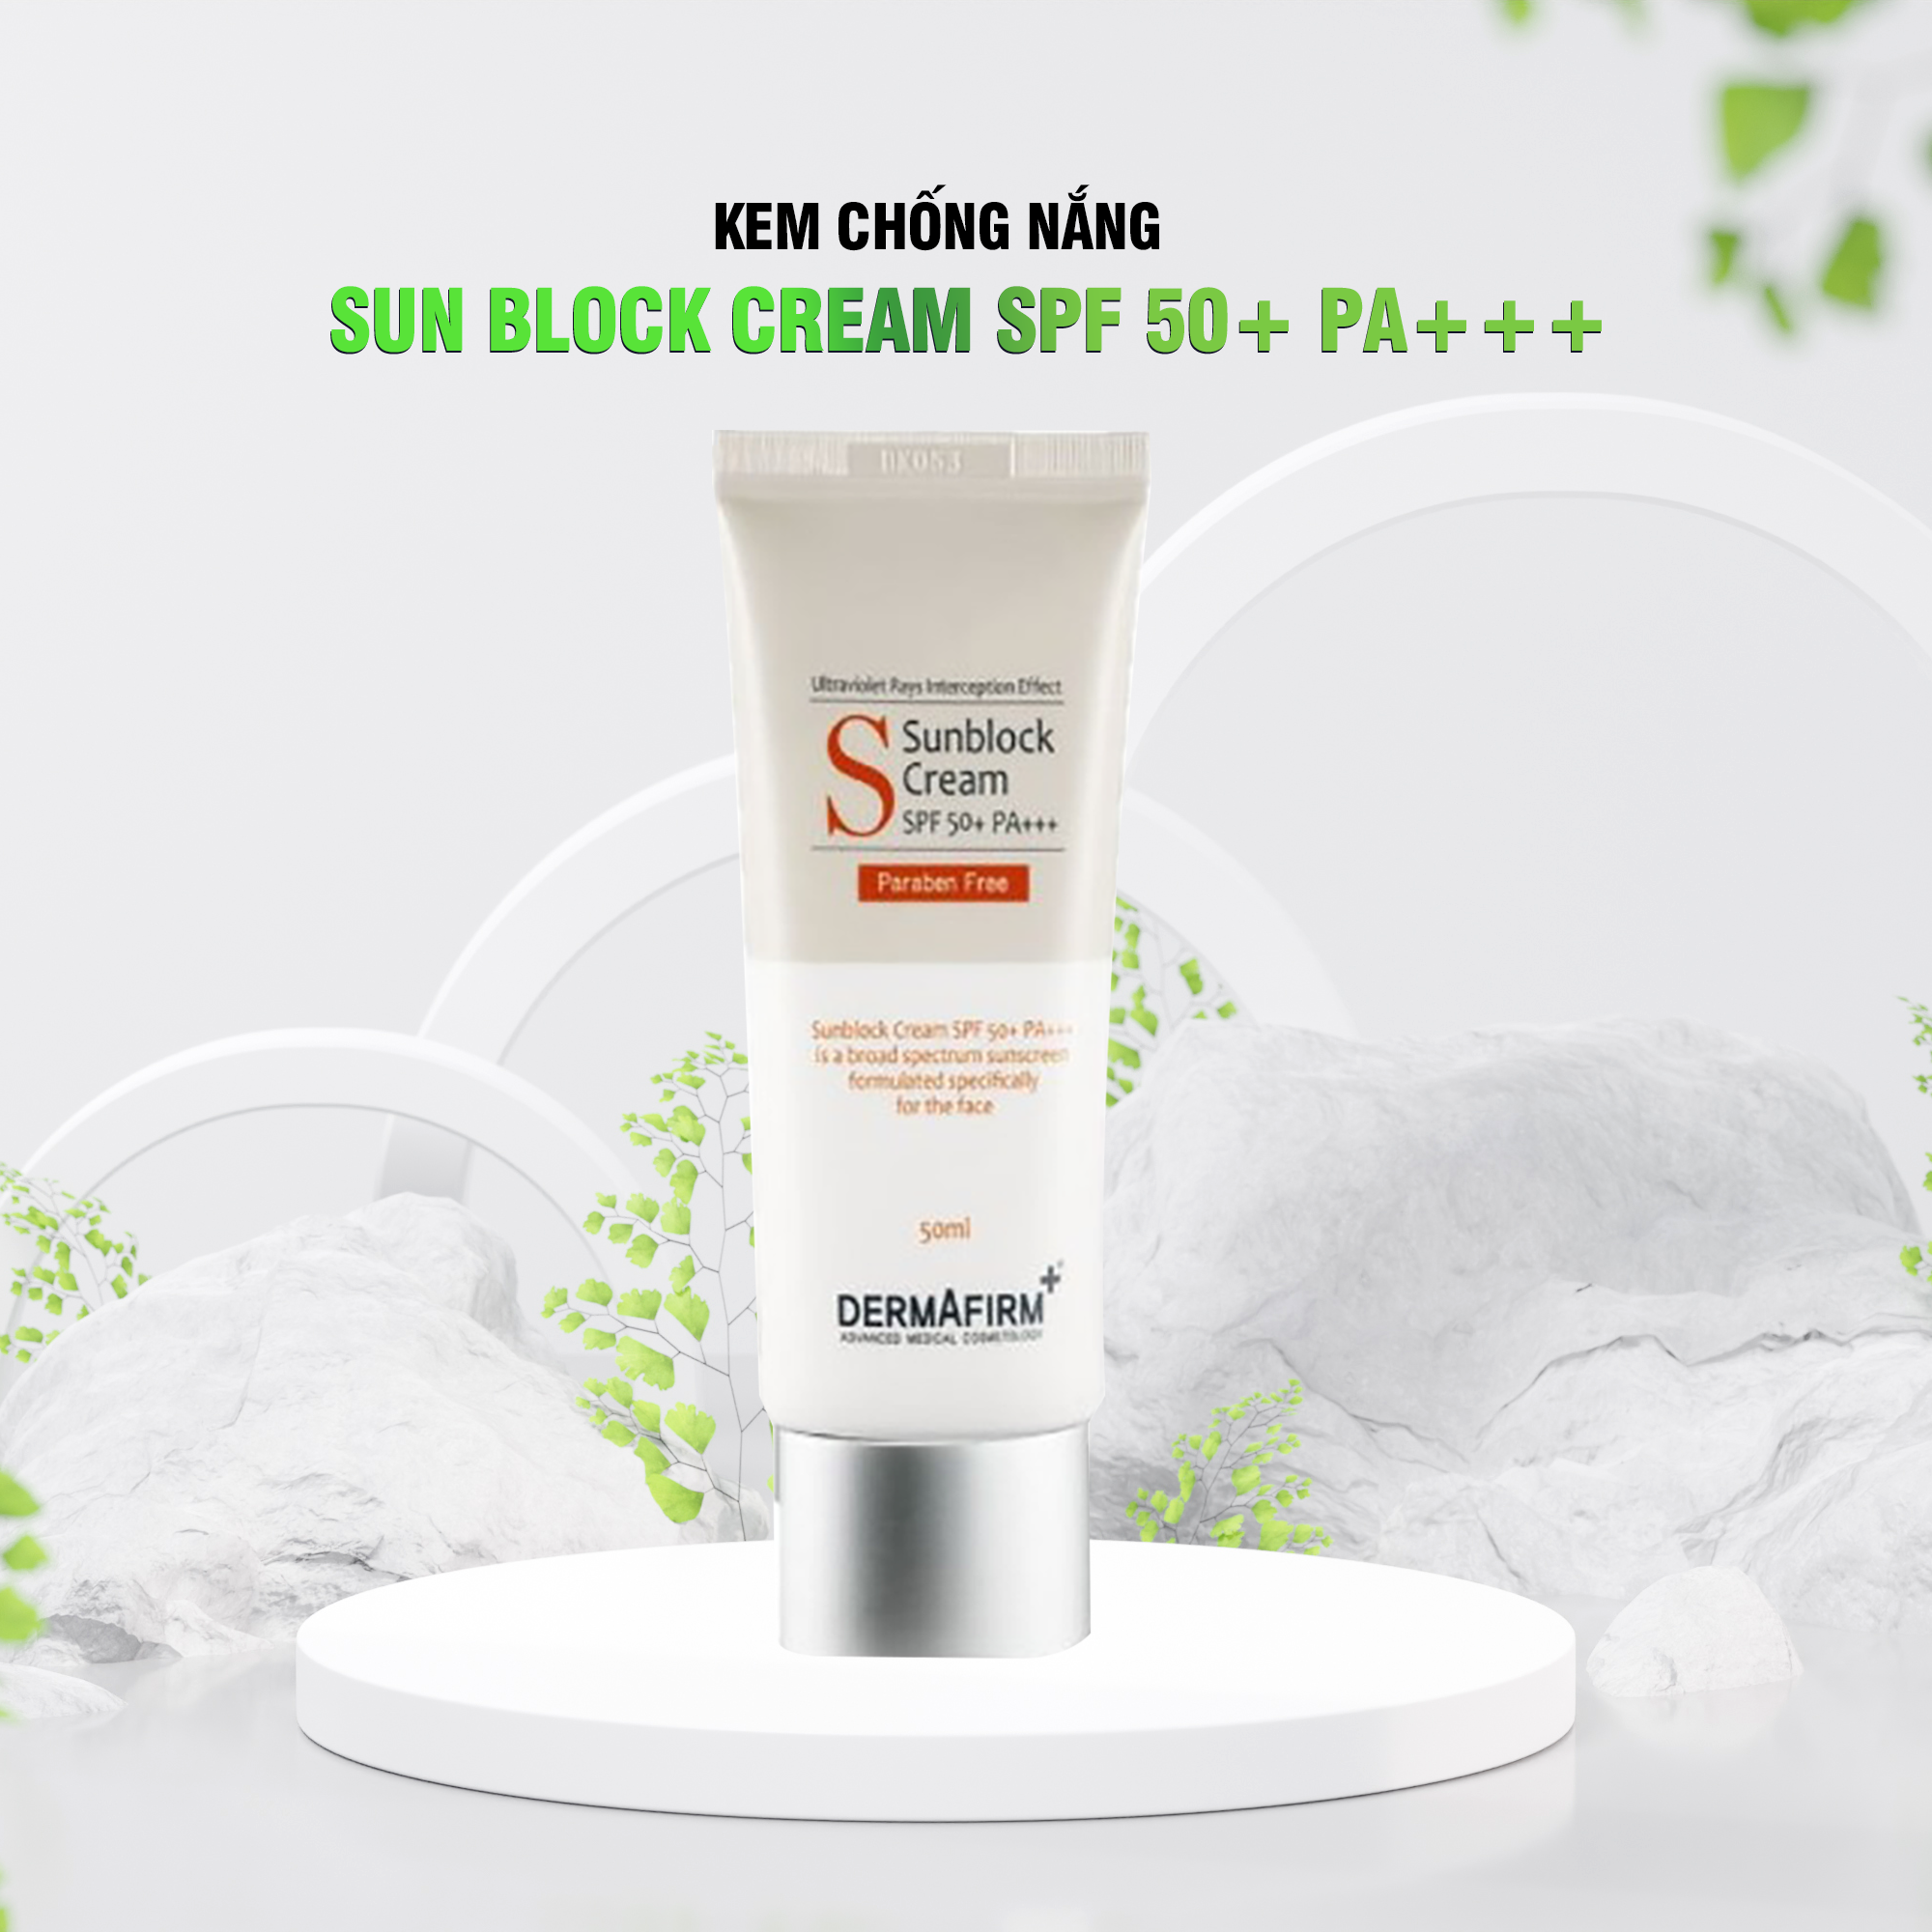 Kem chống nắng Sun Block Cream SPF 50+ PA+++